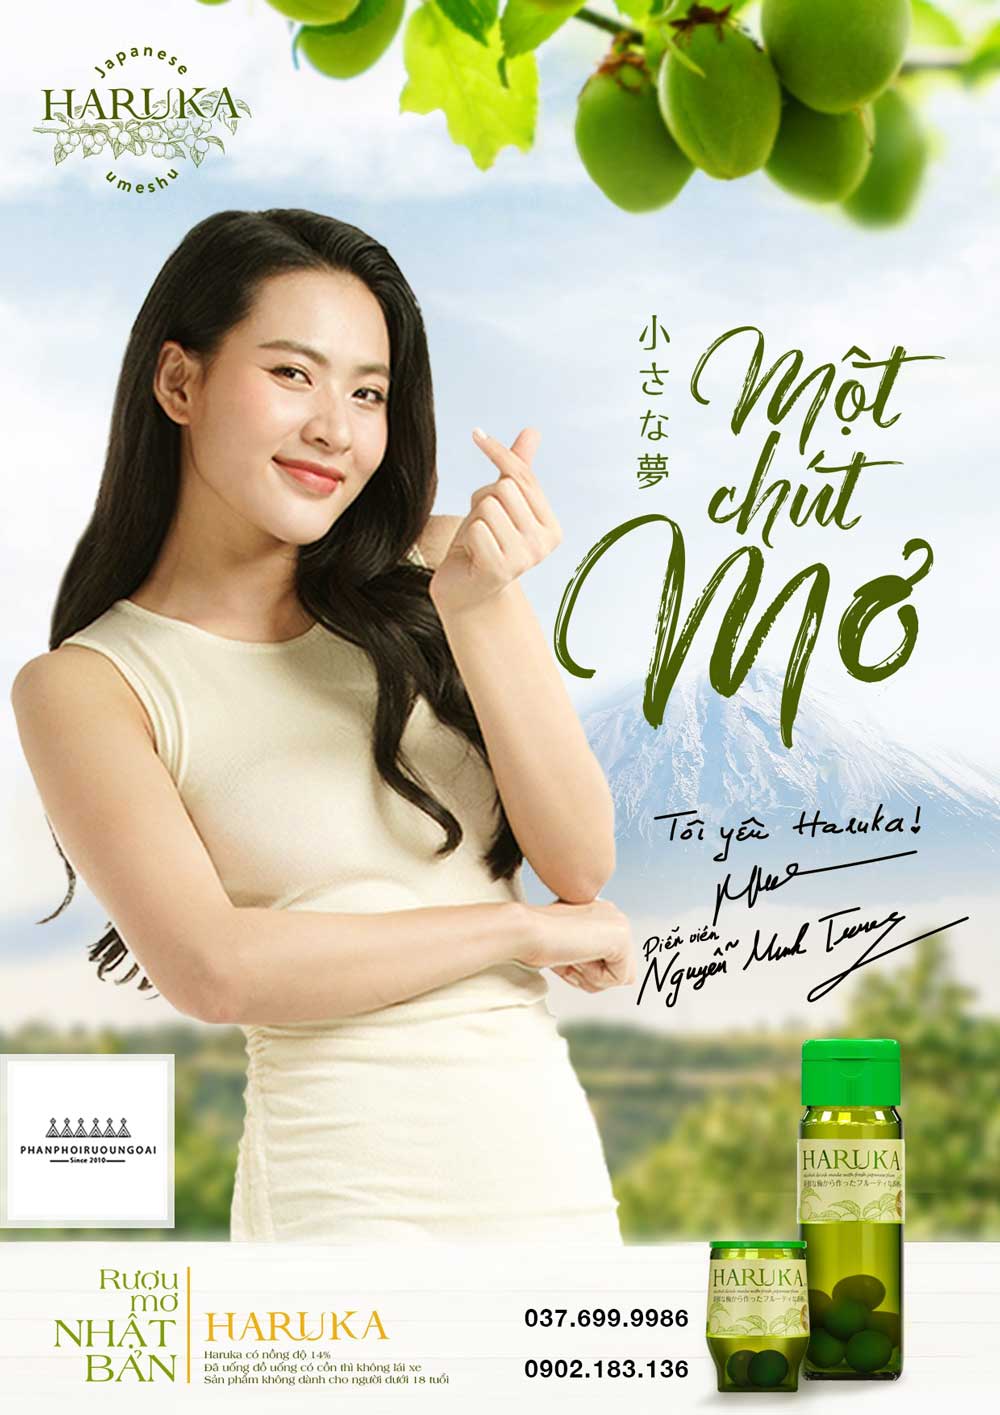 Rượu Mơ Haruka và diễn viên Minh Trang